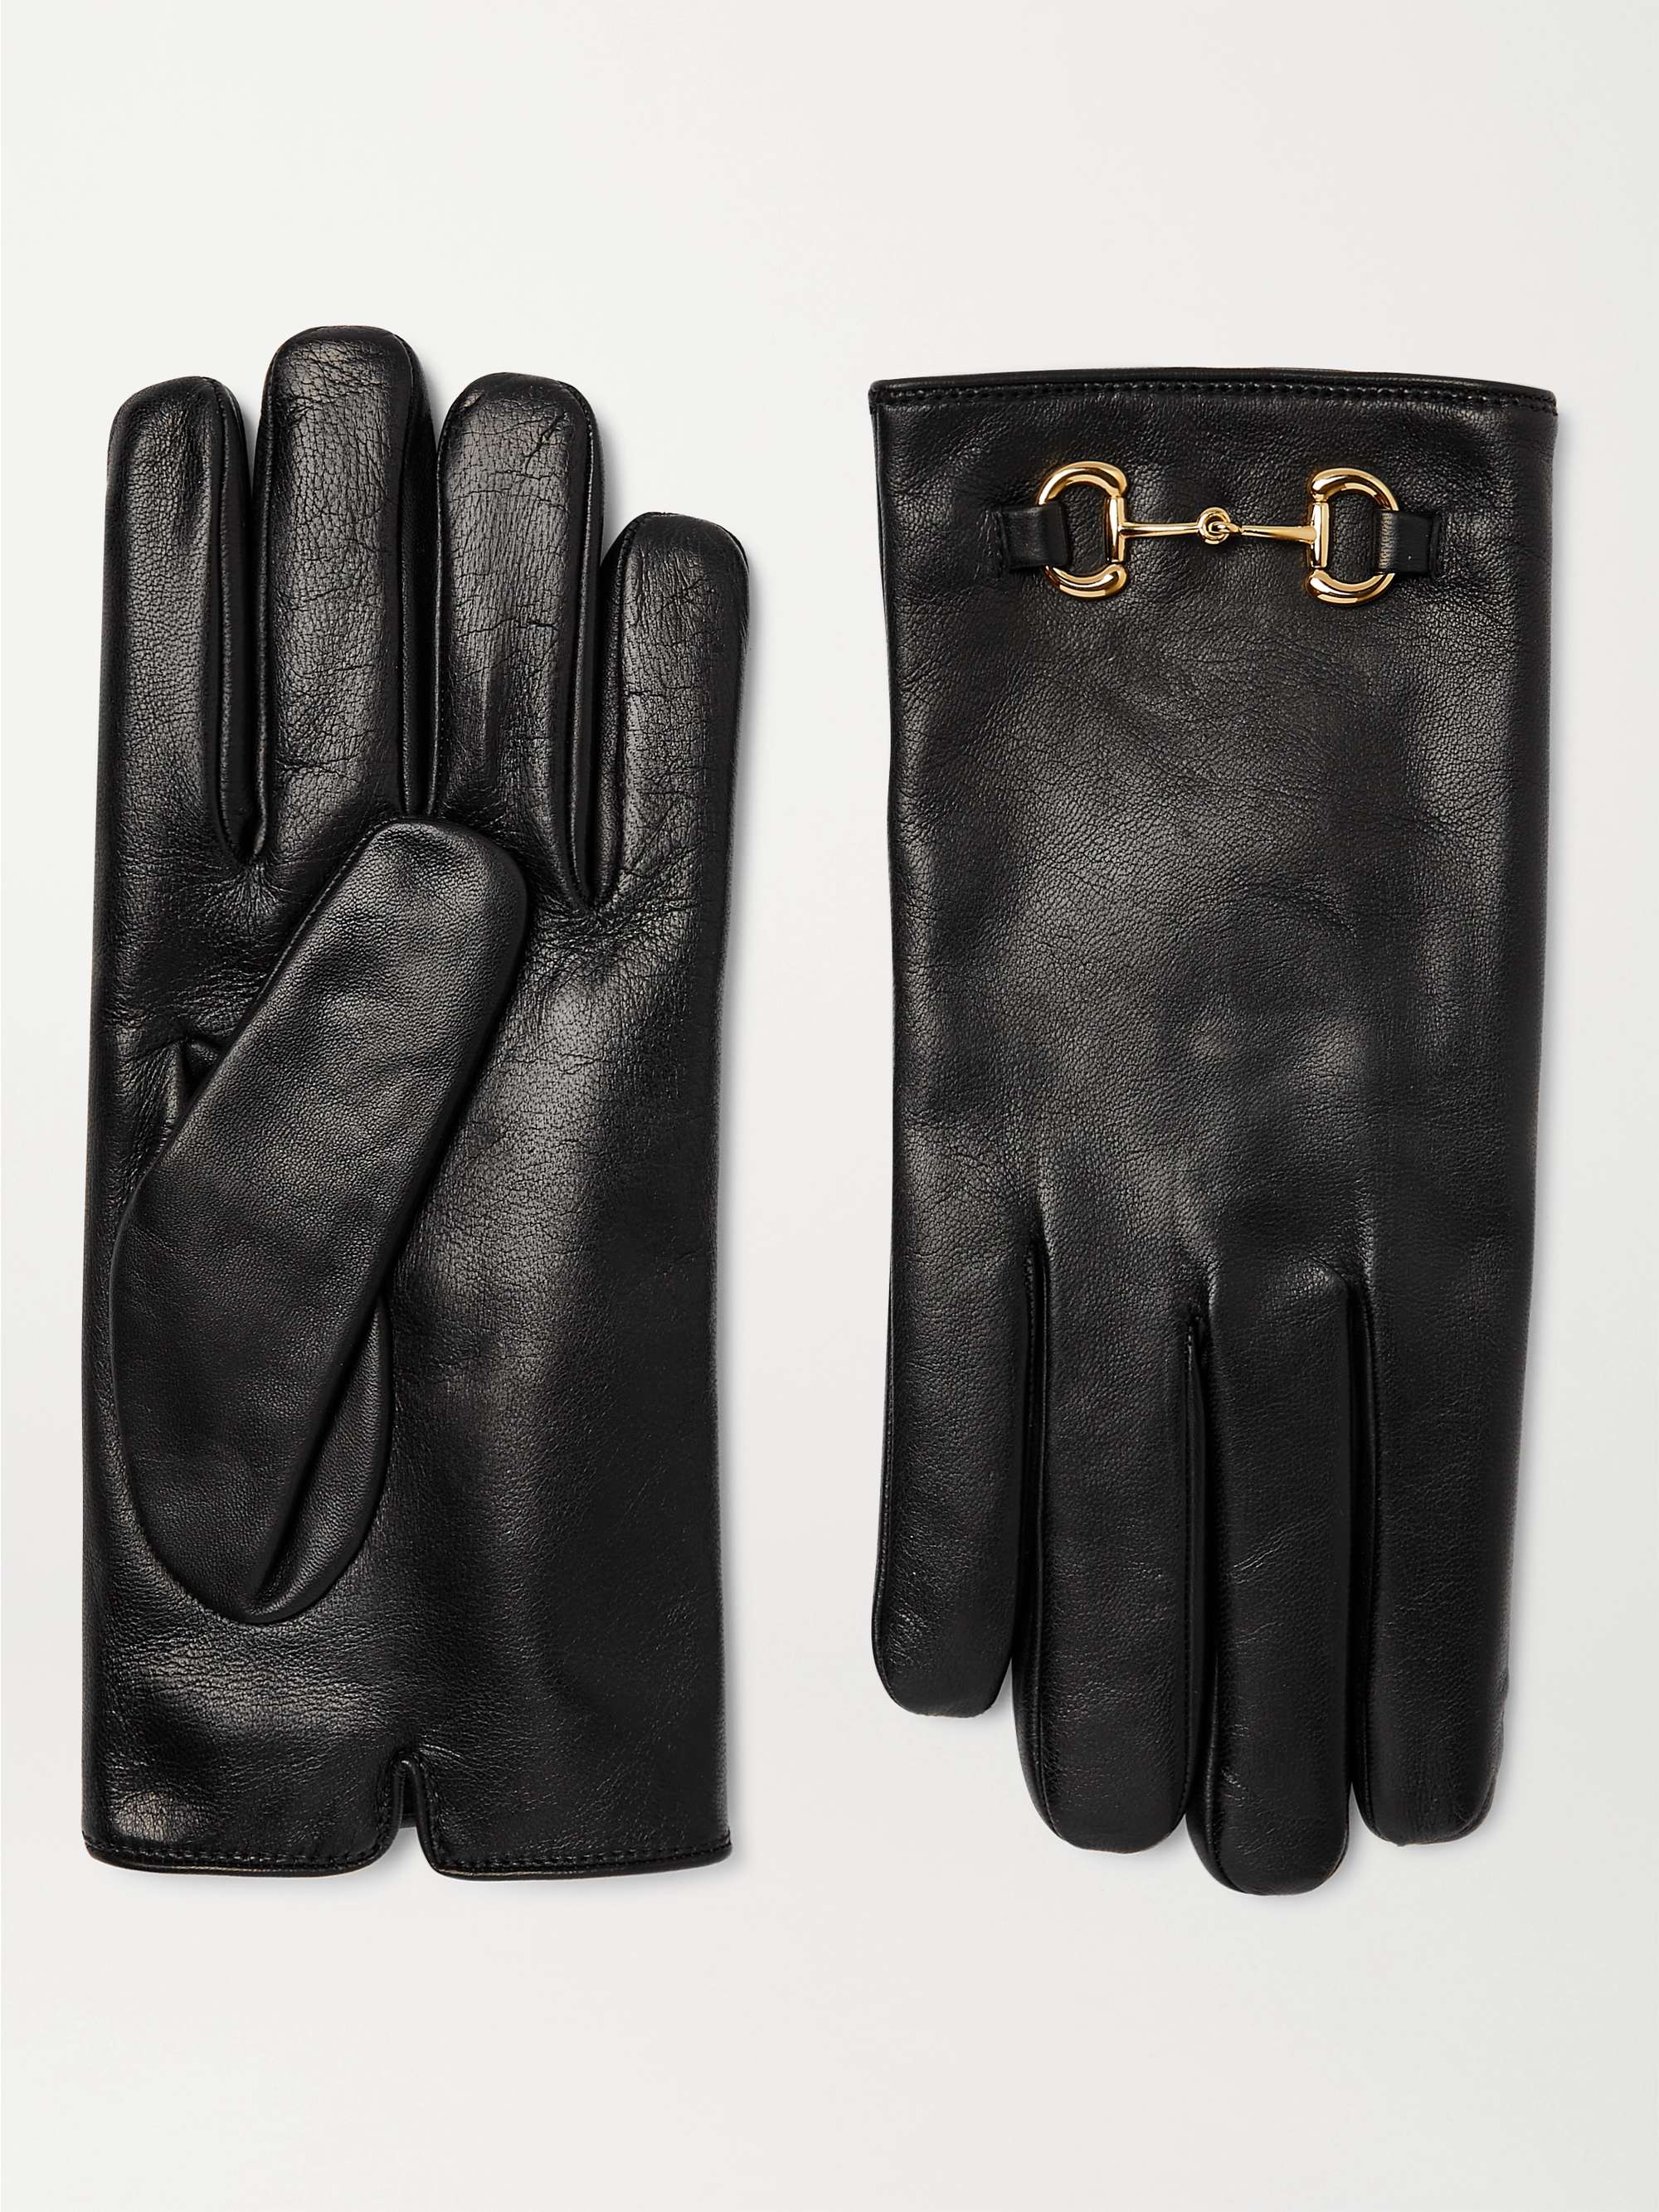 GUCCI Horsebit Cashmere-Lined Leather Gloves for Men | MR PORTER